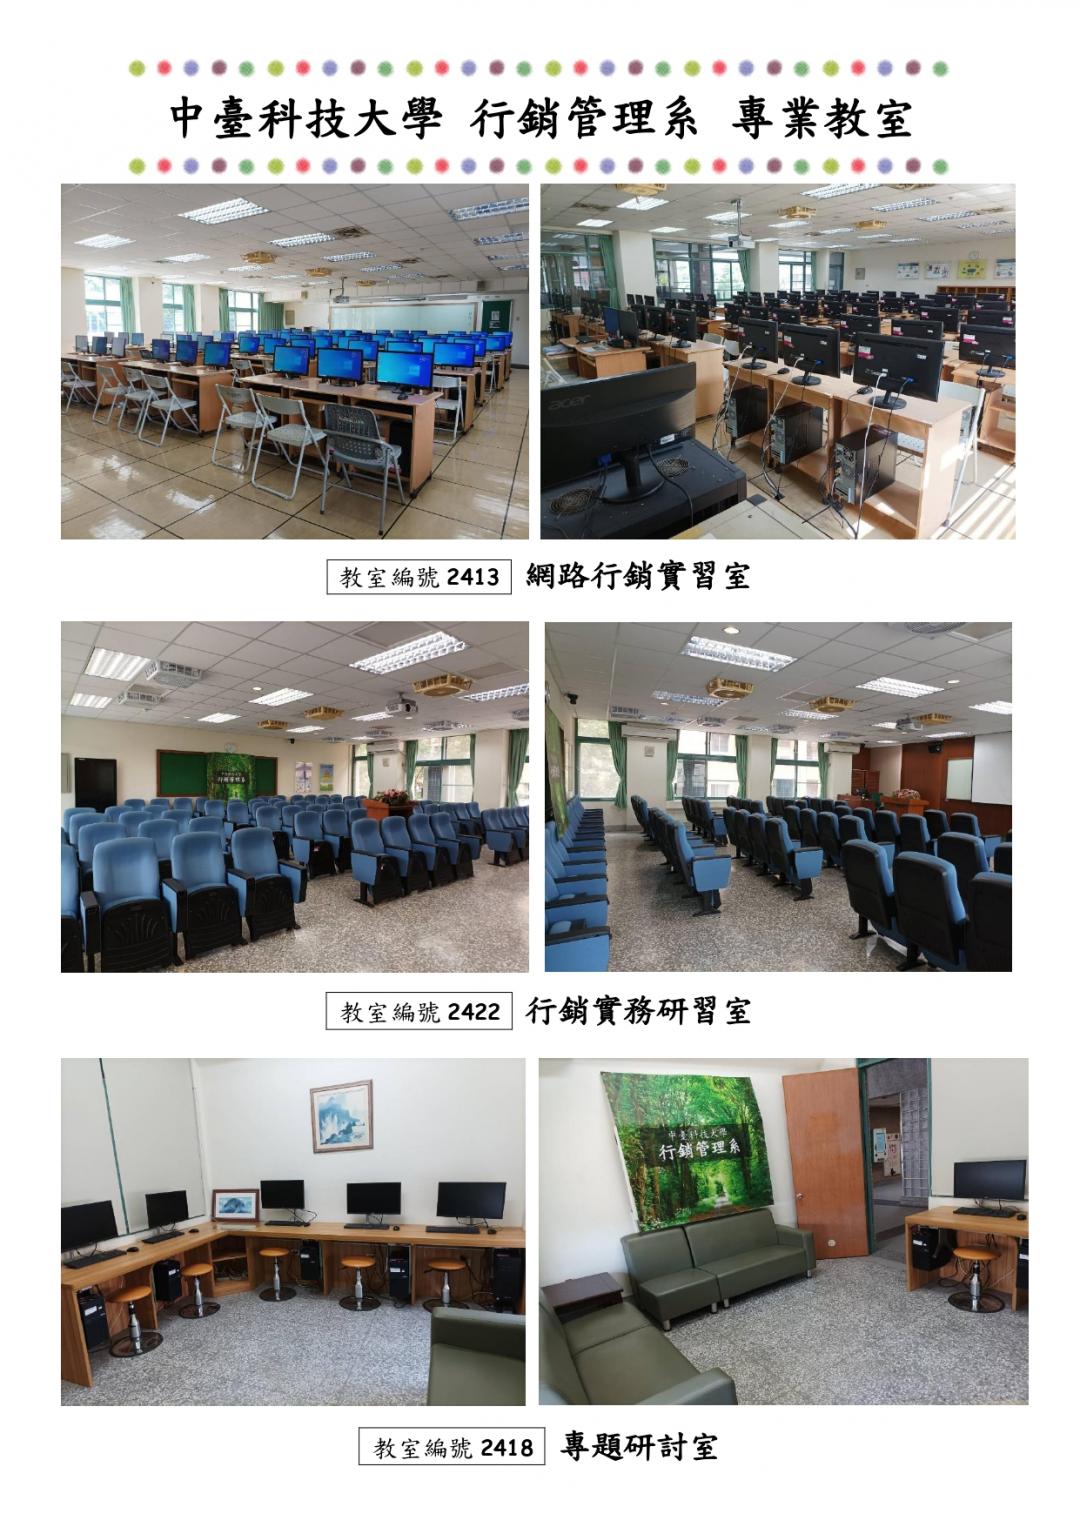 專業教室解說圖片2；來源：中臺科技大學